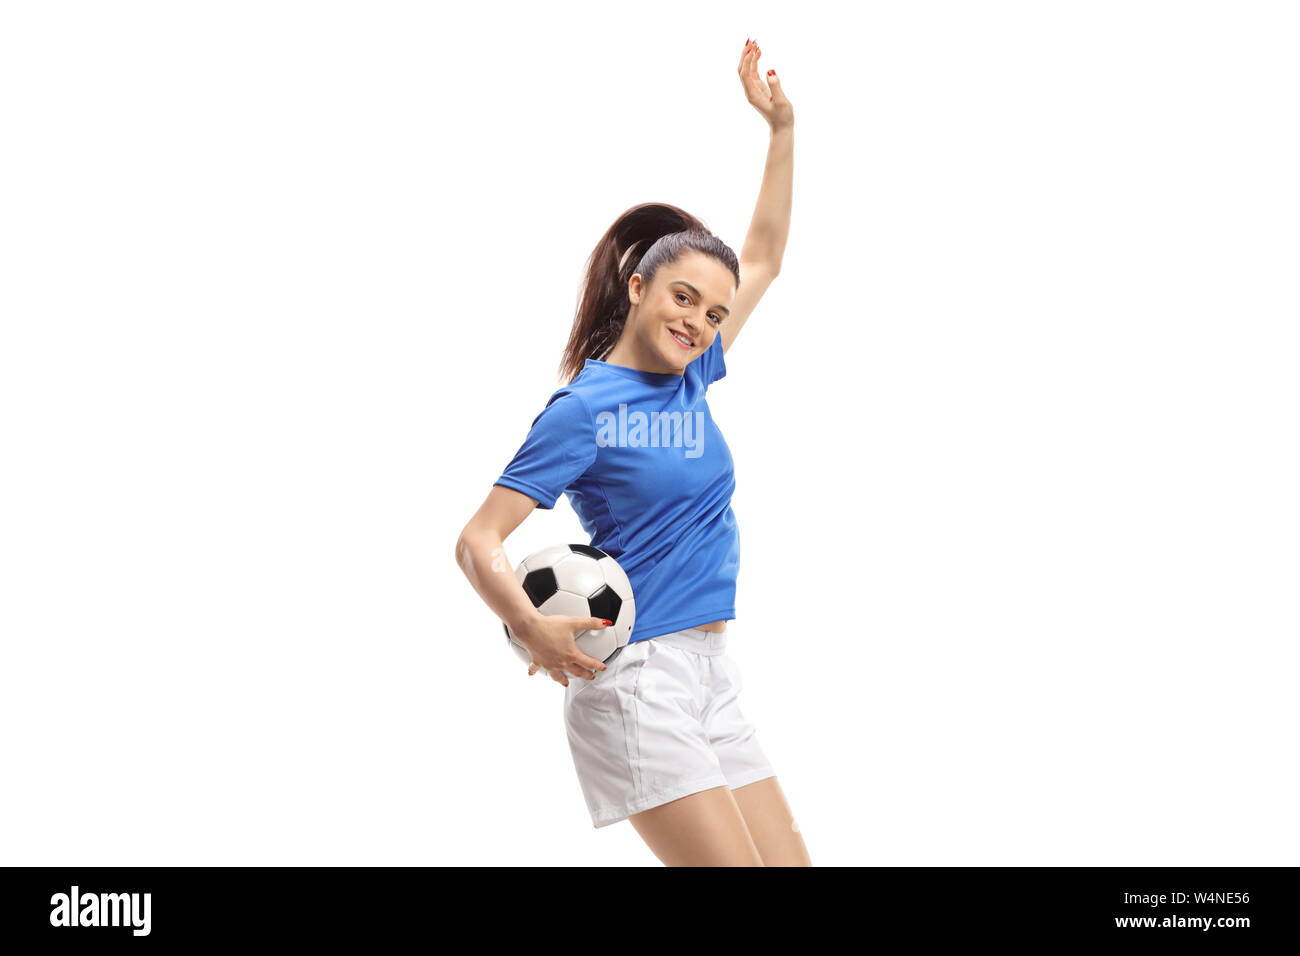 Calcio femminile player jumping isolati su sfondo bianco Foto Stock